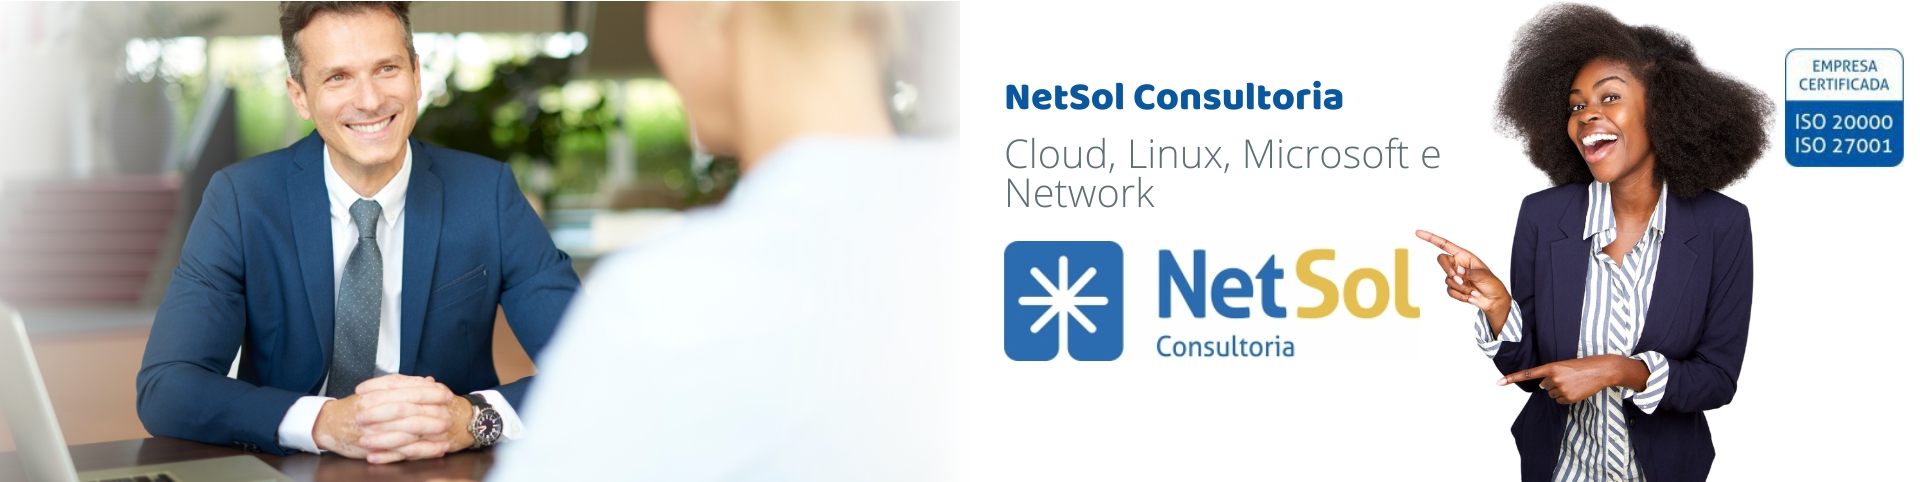 NetSol_Consultoria